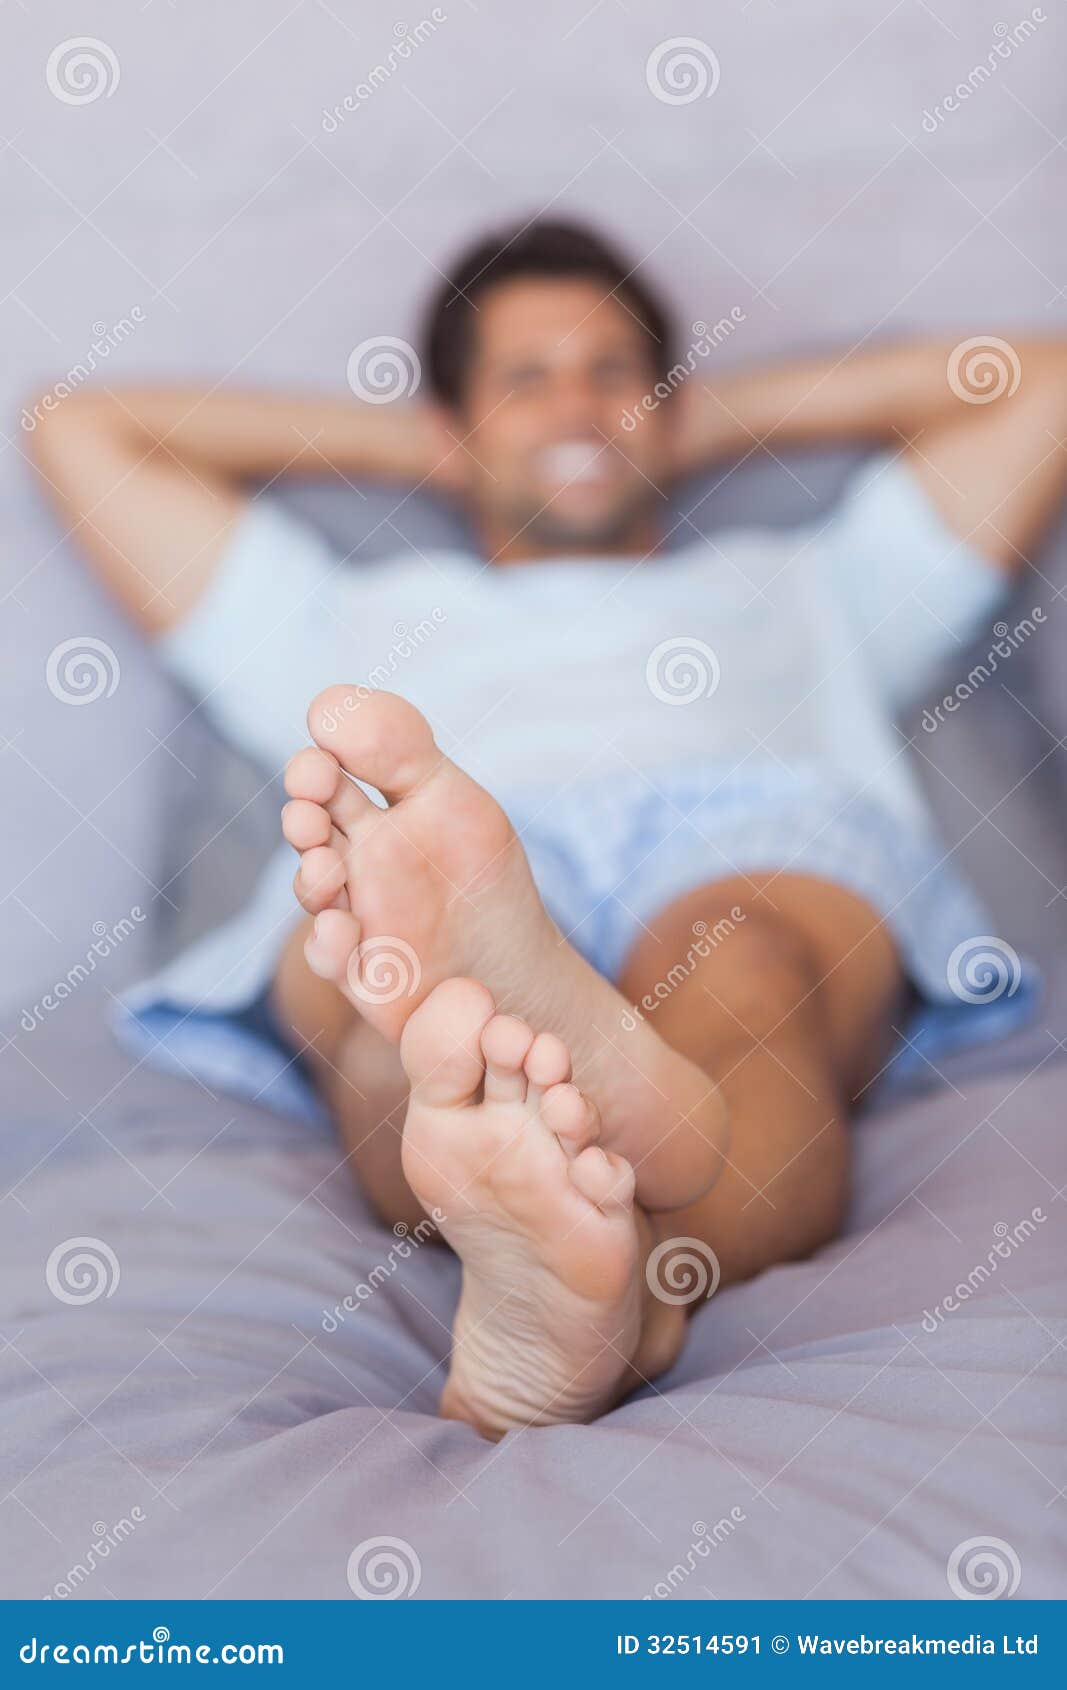 Сонник нога мужчины. Мужские ноги под одеялом. Ноги из под одеяла. Мужские ноги вверх. Мужская рука на ноге под одеялом со вспышкой.